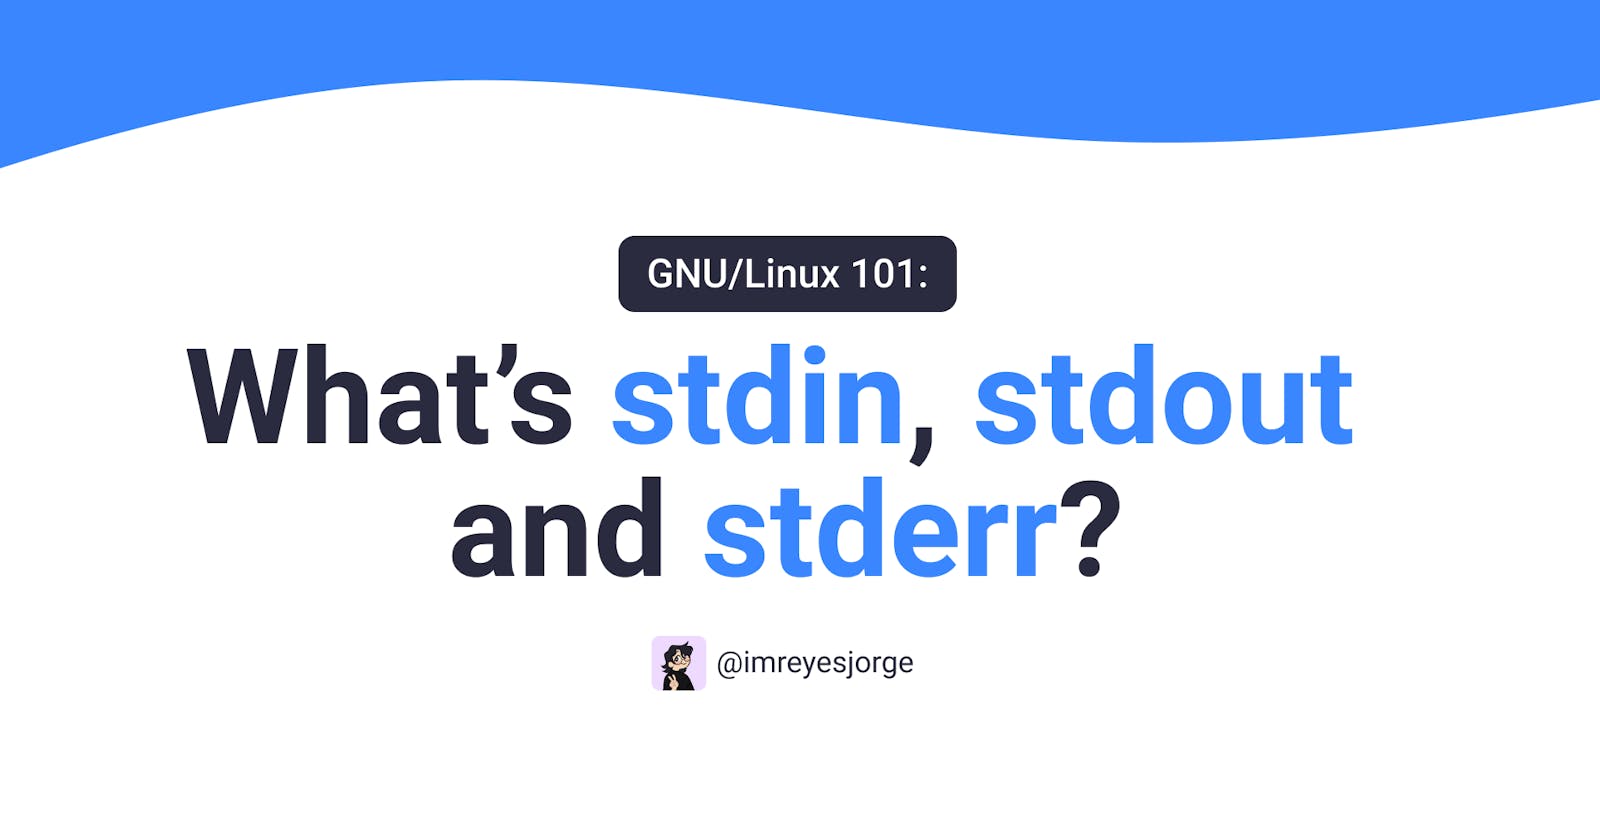 GNU/Linux 101: What's stdin, stdout and stderr?